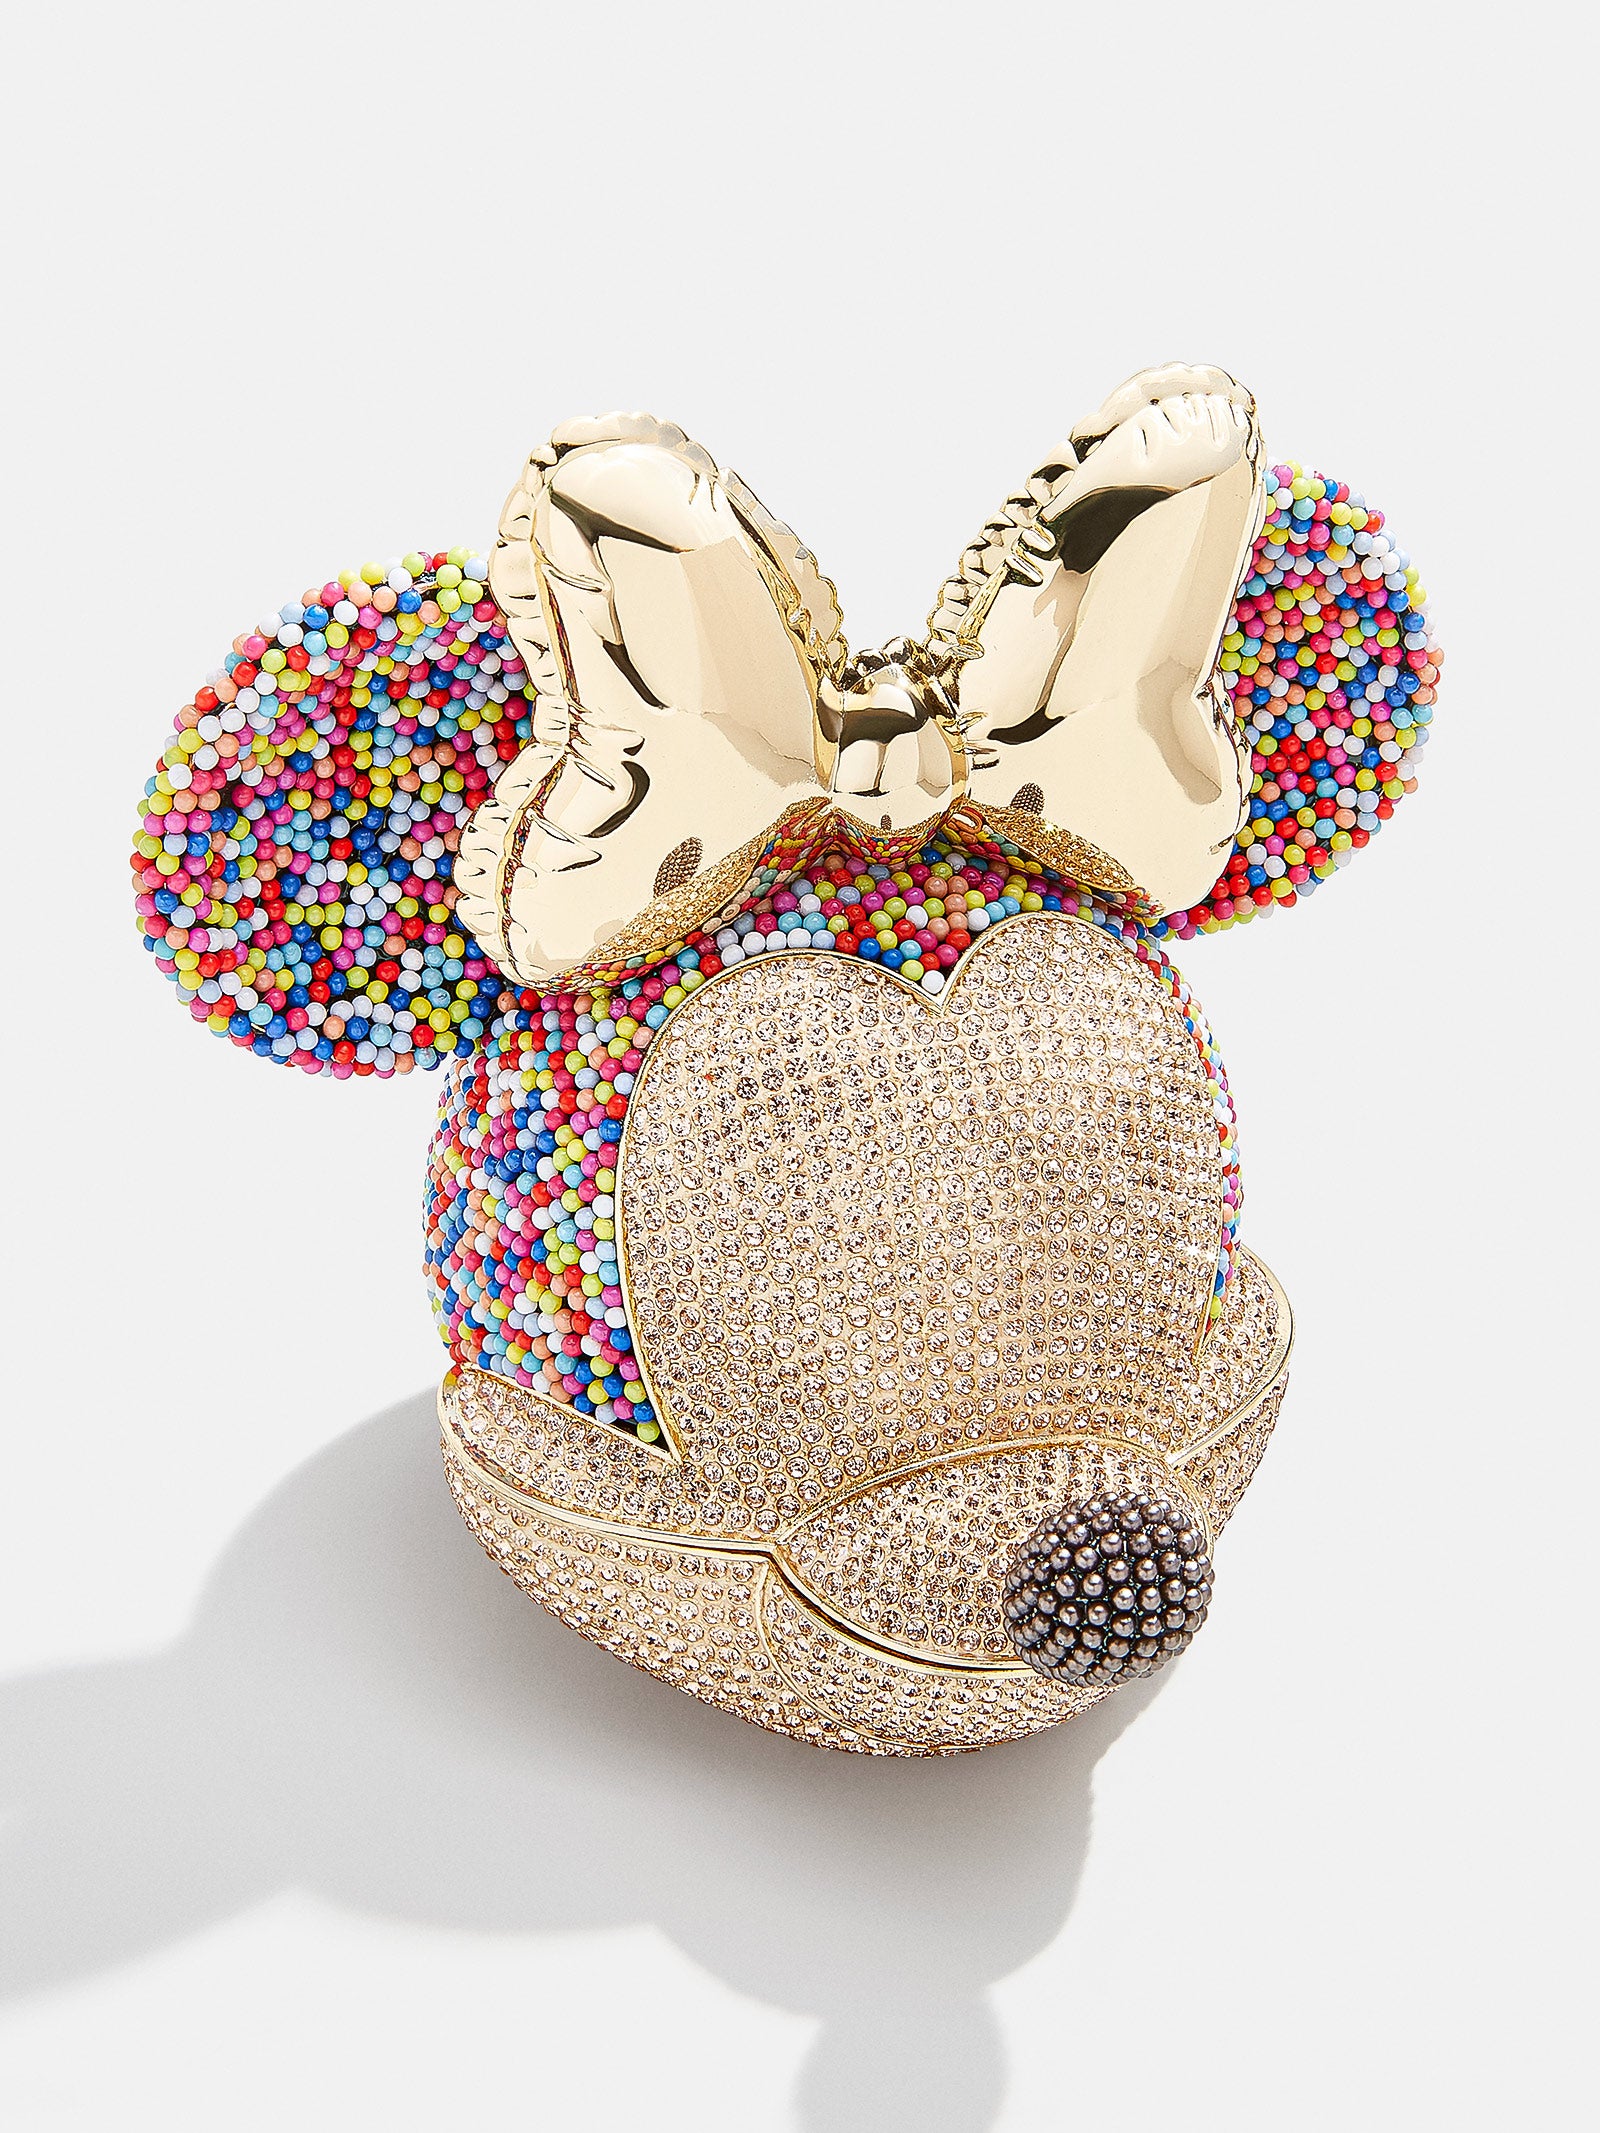 Ordenado posponer Kilimanjaro Minnie Mouse Disney Catchall - Birthday – Disney jewelry storage – BaubleBar